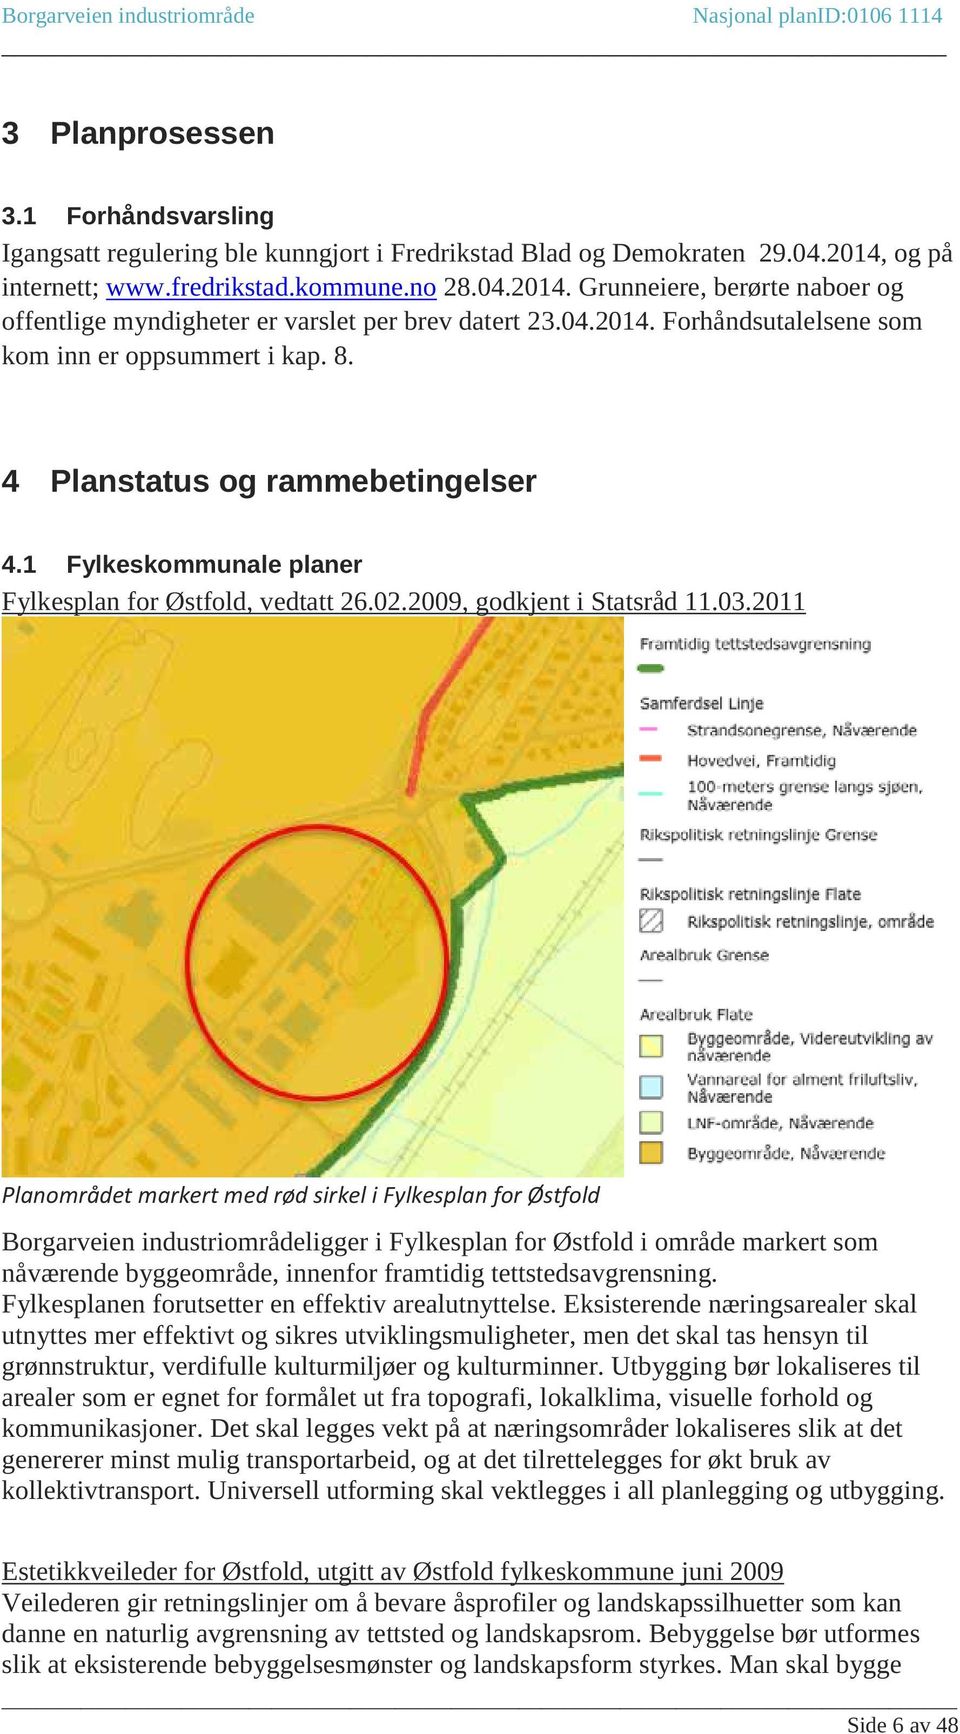 2011 Planområdet markert med rød sirkel i Fylkesplan for Østfold Borgarveien industriområdeligger i Fylkesplan for Østfold i område markert som nåværende byggeområde, innenfor framtidig